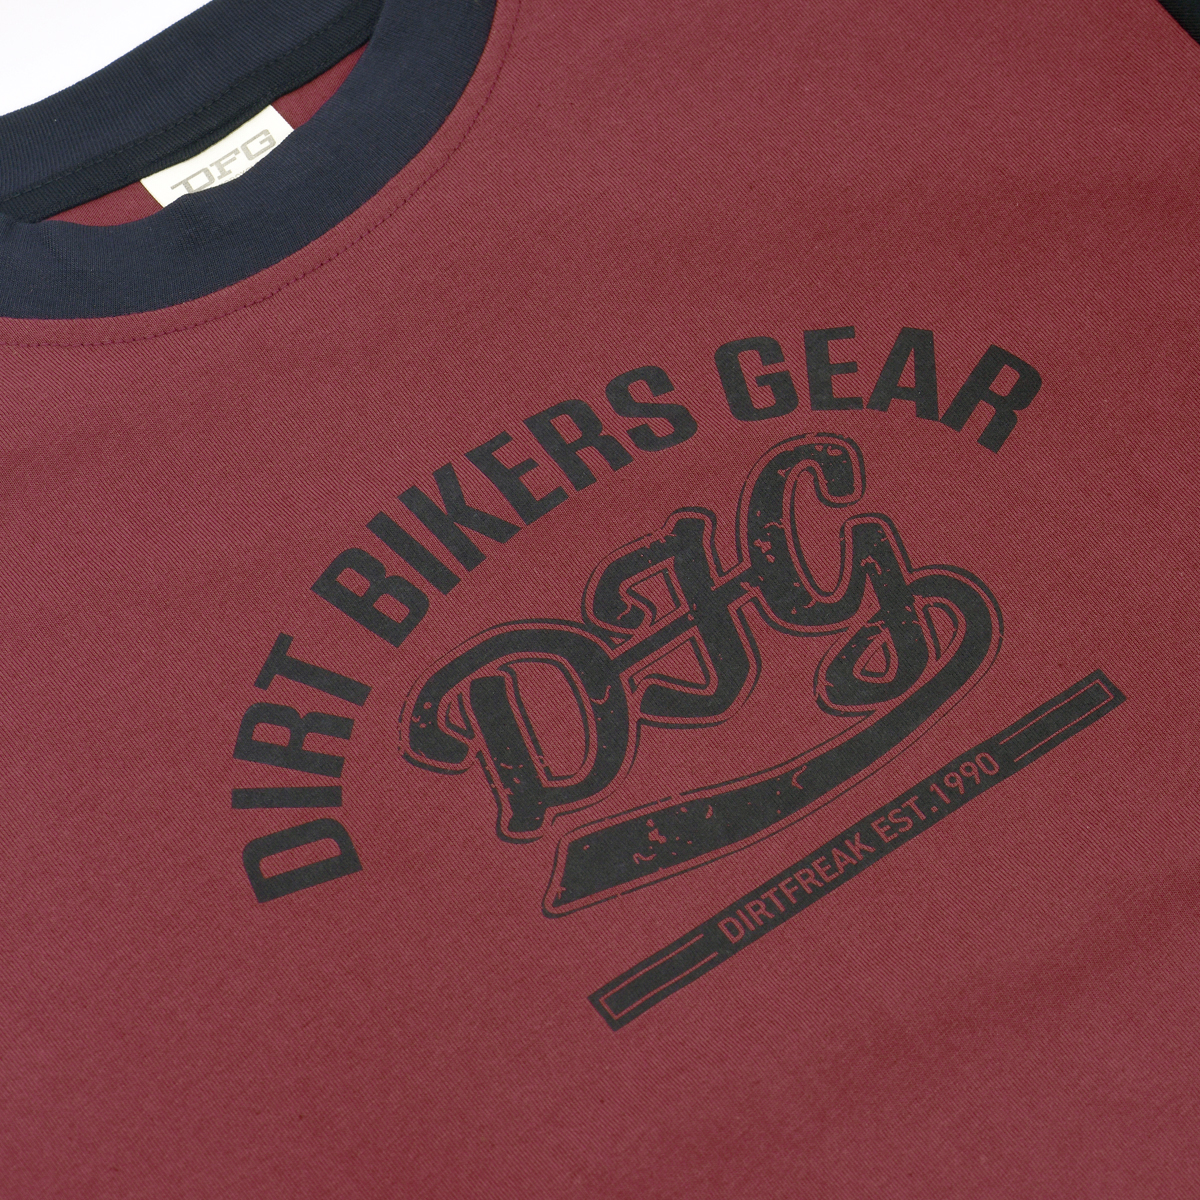 DFG ライドジャージ ボルテージ マルーン| Dirtbikeplus (ダートバイクプラス)